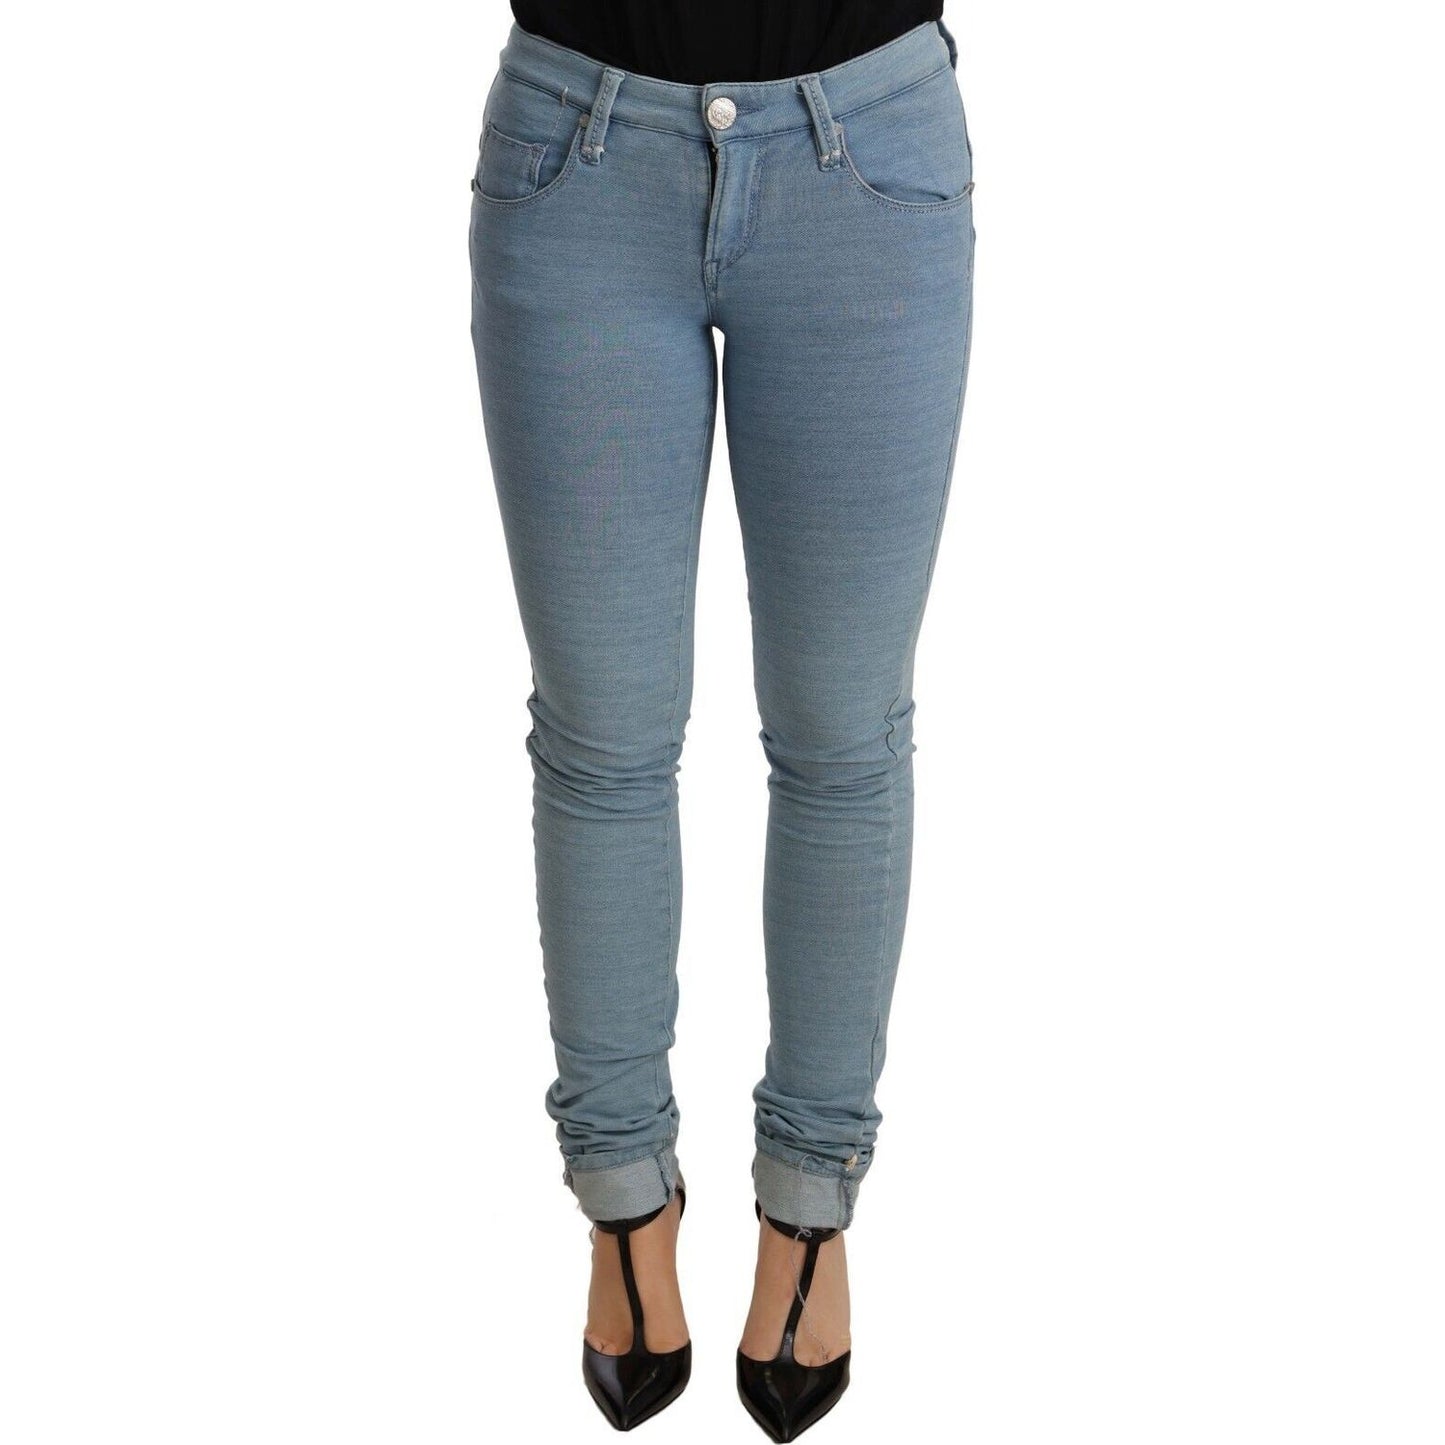 Acht Chic Push Up Slim Fit Denim Jeans Jeans & Pants blue-cotton-stretch-hem-slim-fit-women-denim-trouser s-l1600-2022-09-15T163016.430-2b3959eb-5a2.jpg